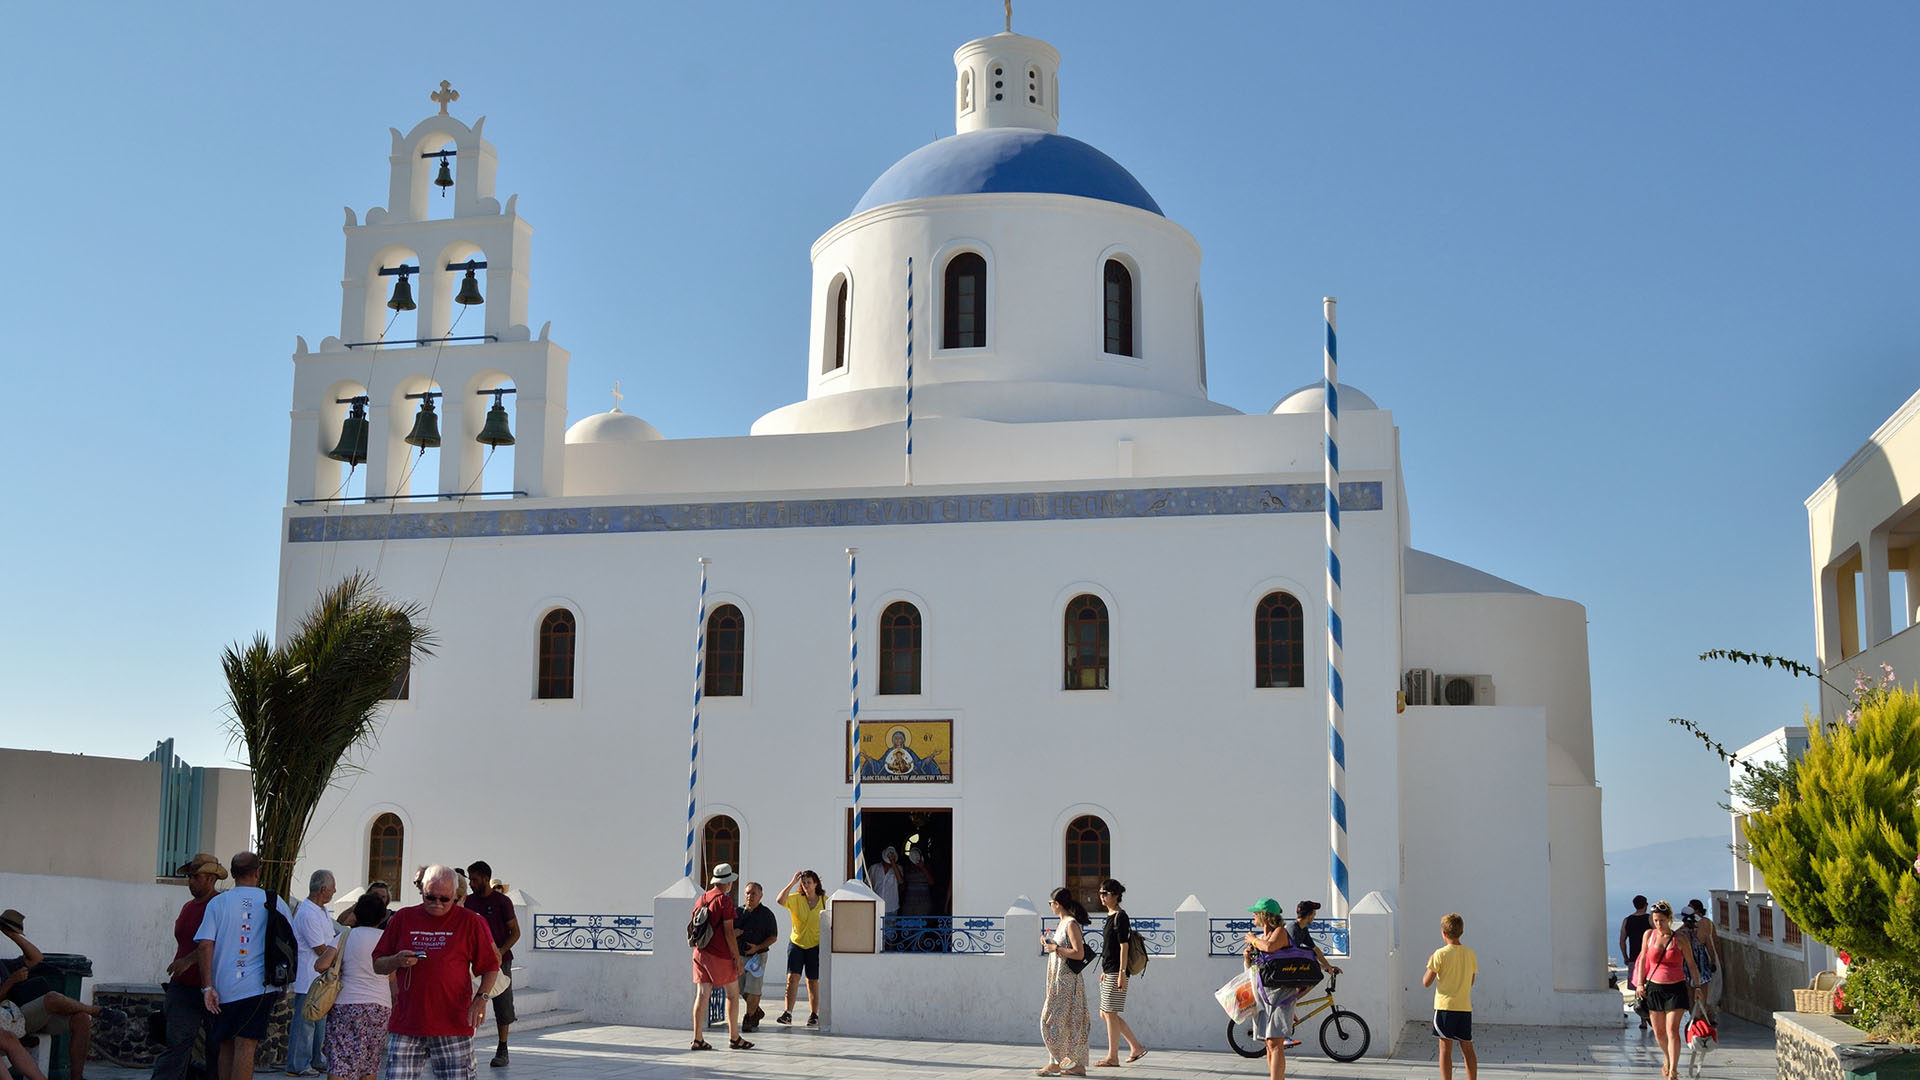 Le projet de réforme des rapports Eglise-Etat en Grèce a été rejeté par le Saint-Synode. | © Flickr/
Cha già José
/CC BY-SA 2.0.